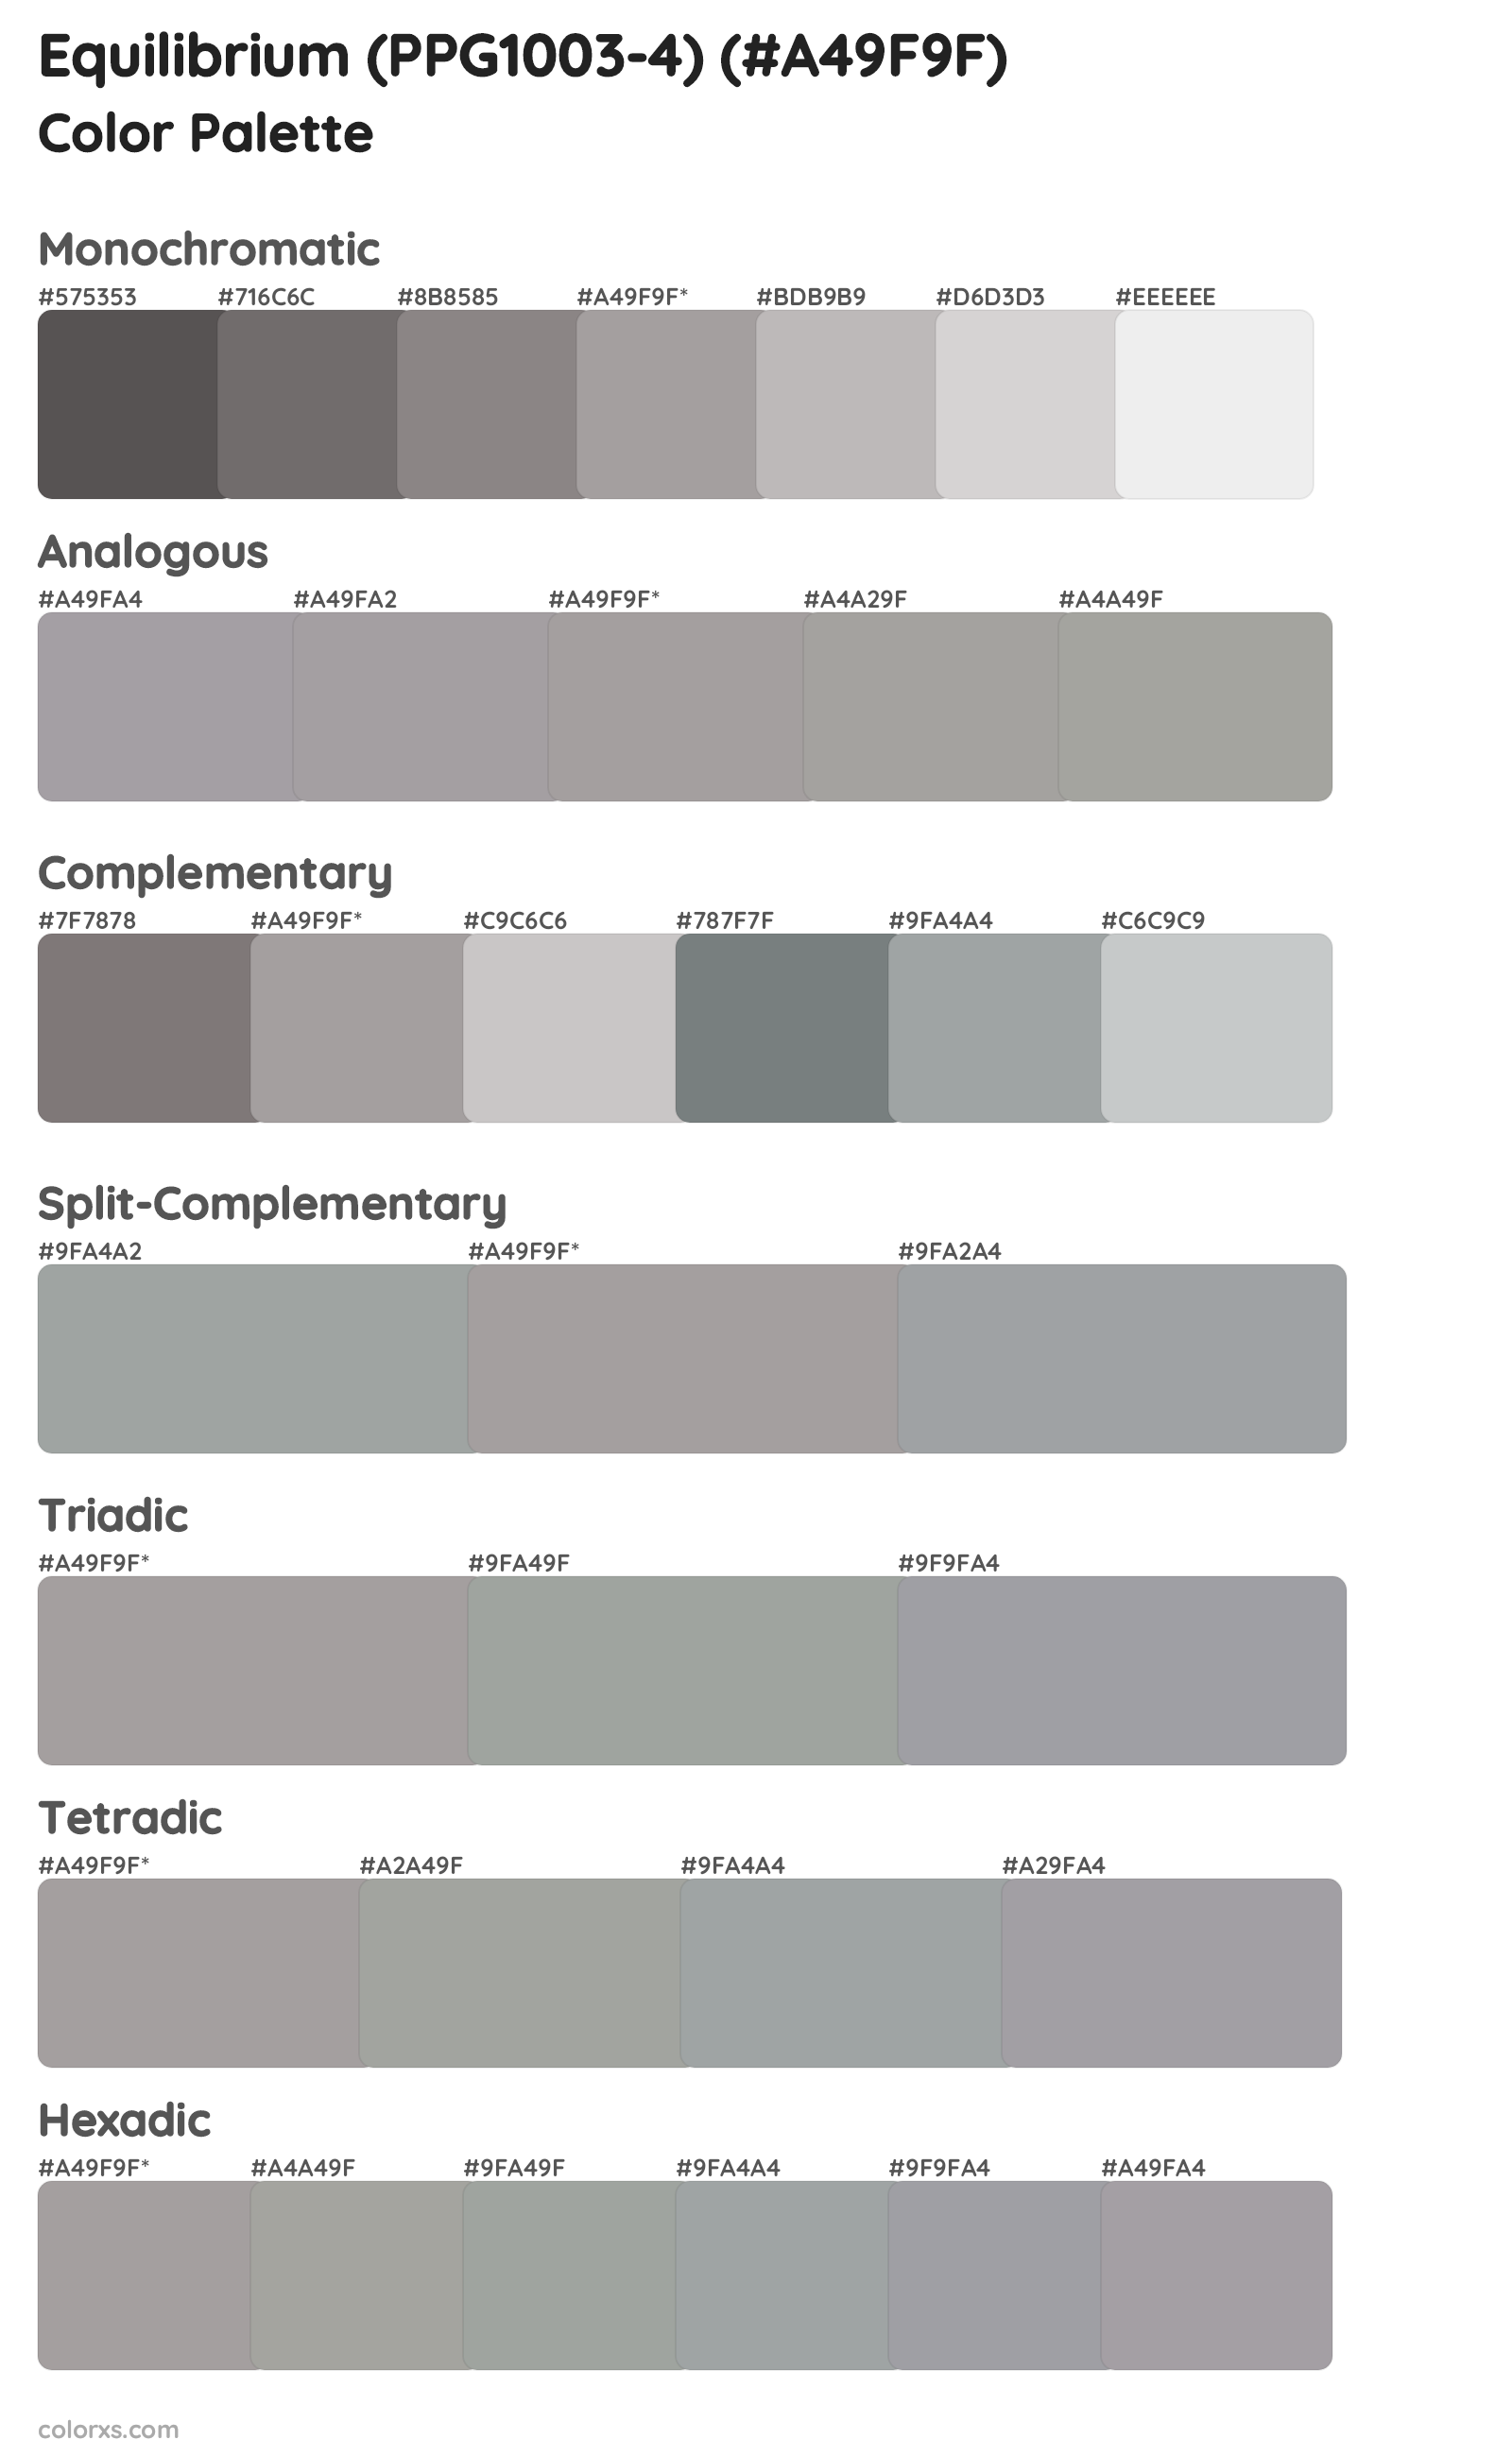 Equilibrium (PPG1003-4) Color Scheme Palettes